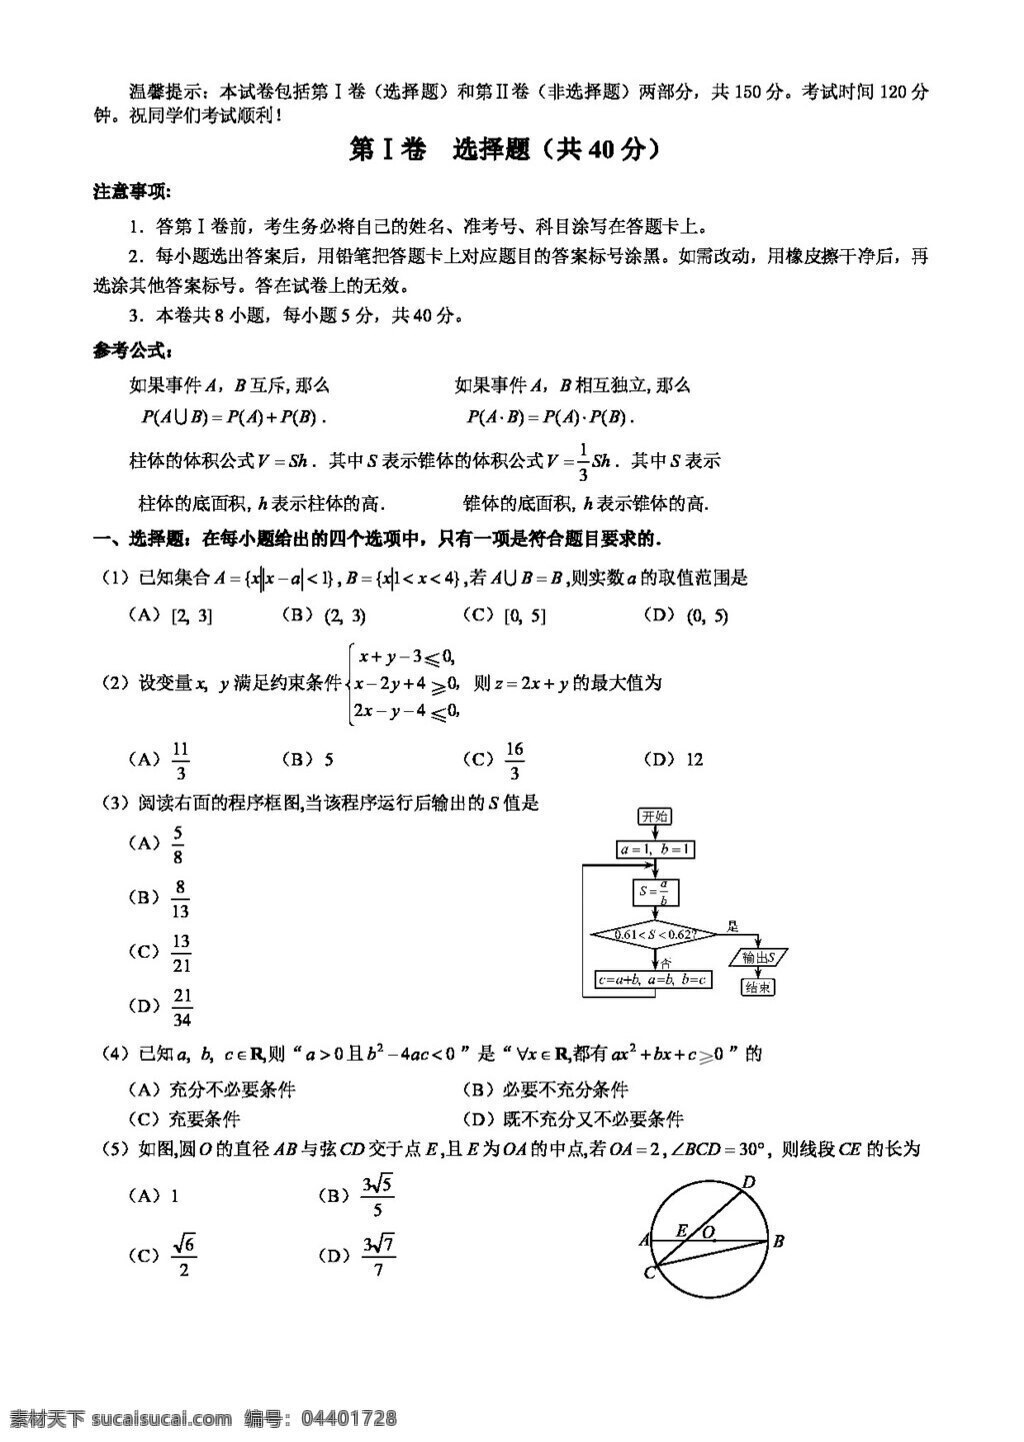 数学 人教 版 天津市 和平区 2016 年 高三 年级 理 模 试卷 高考专区 人教版